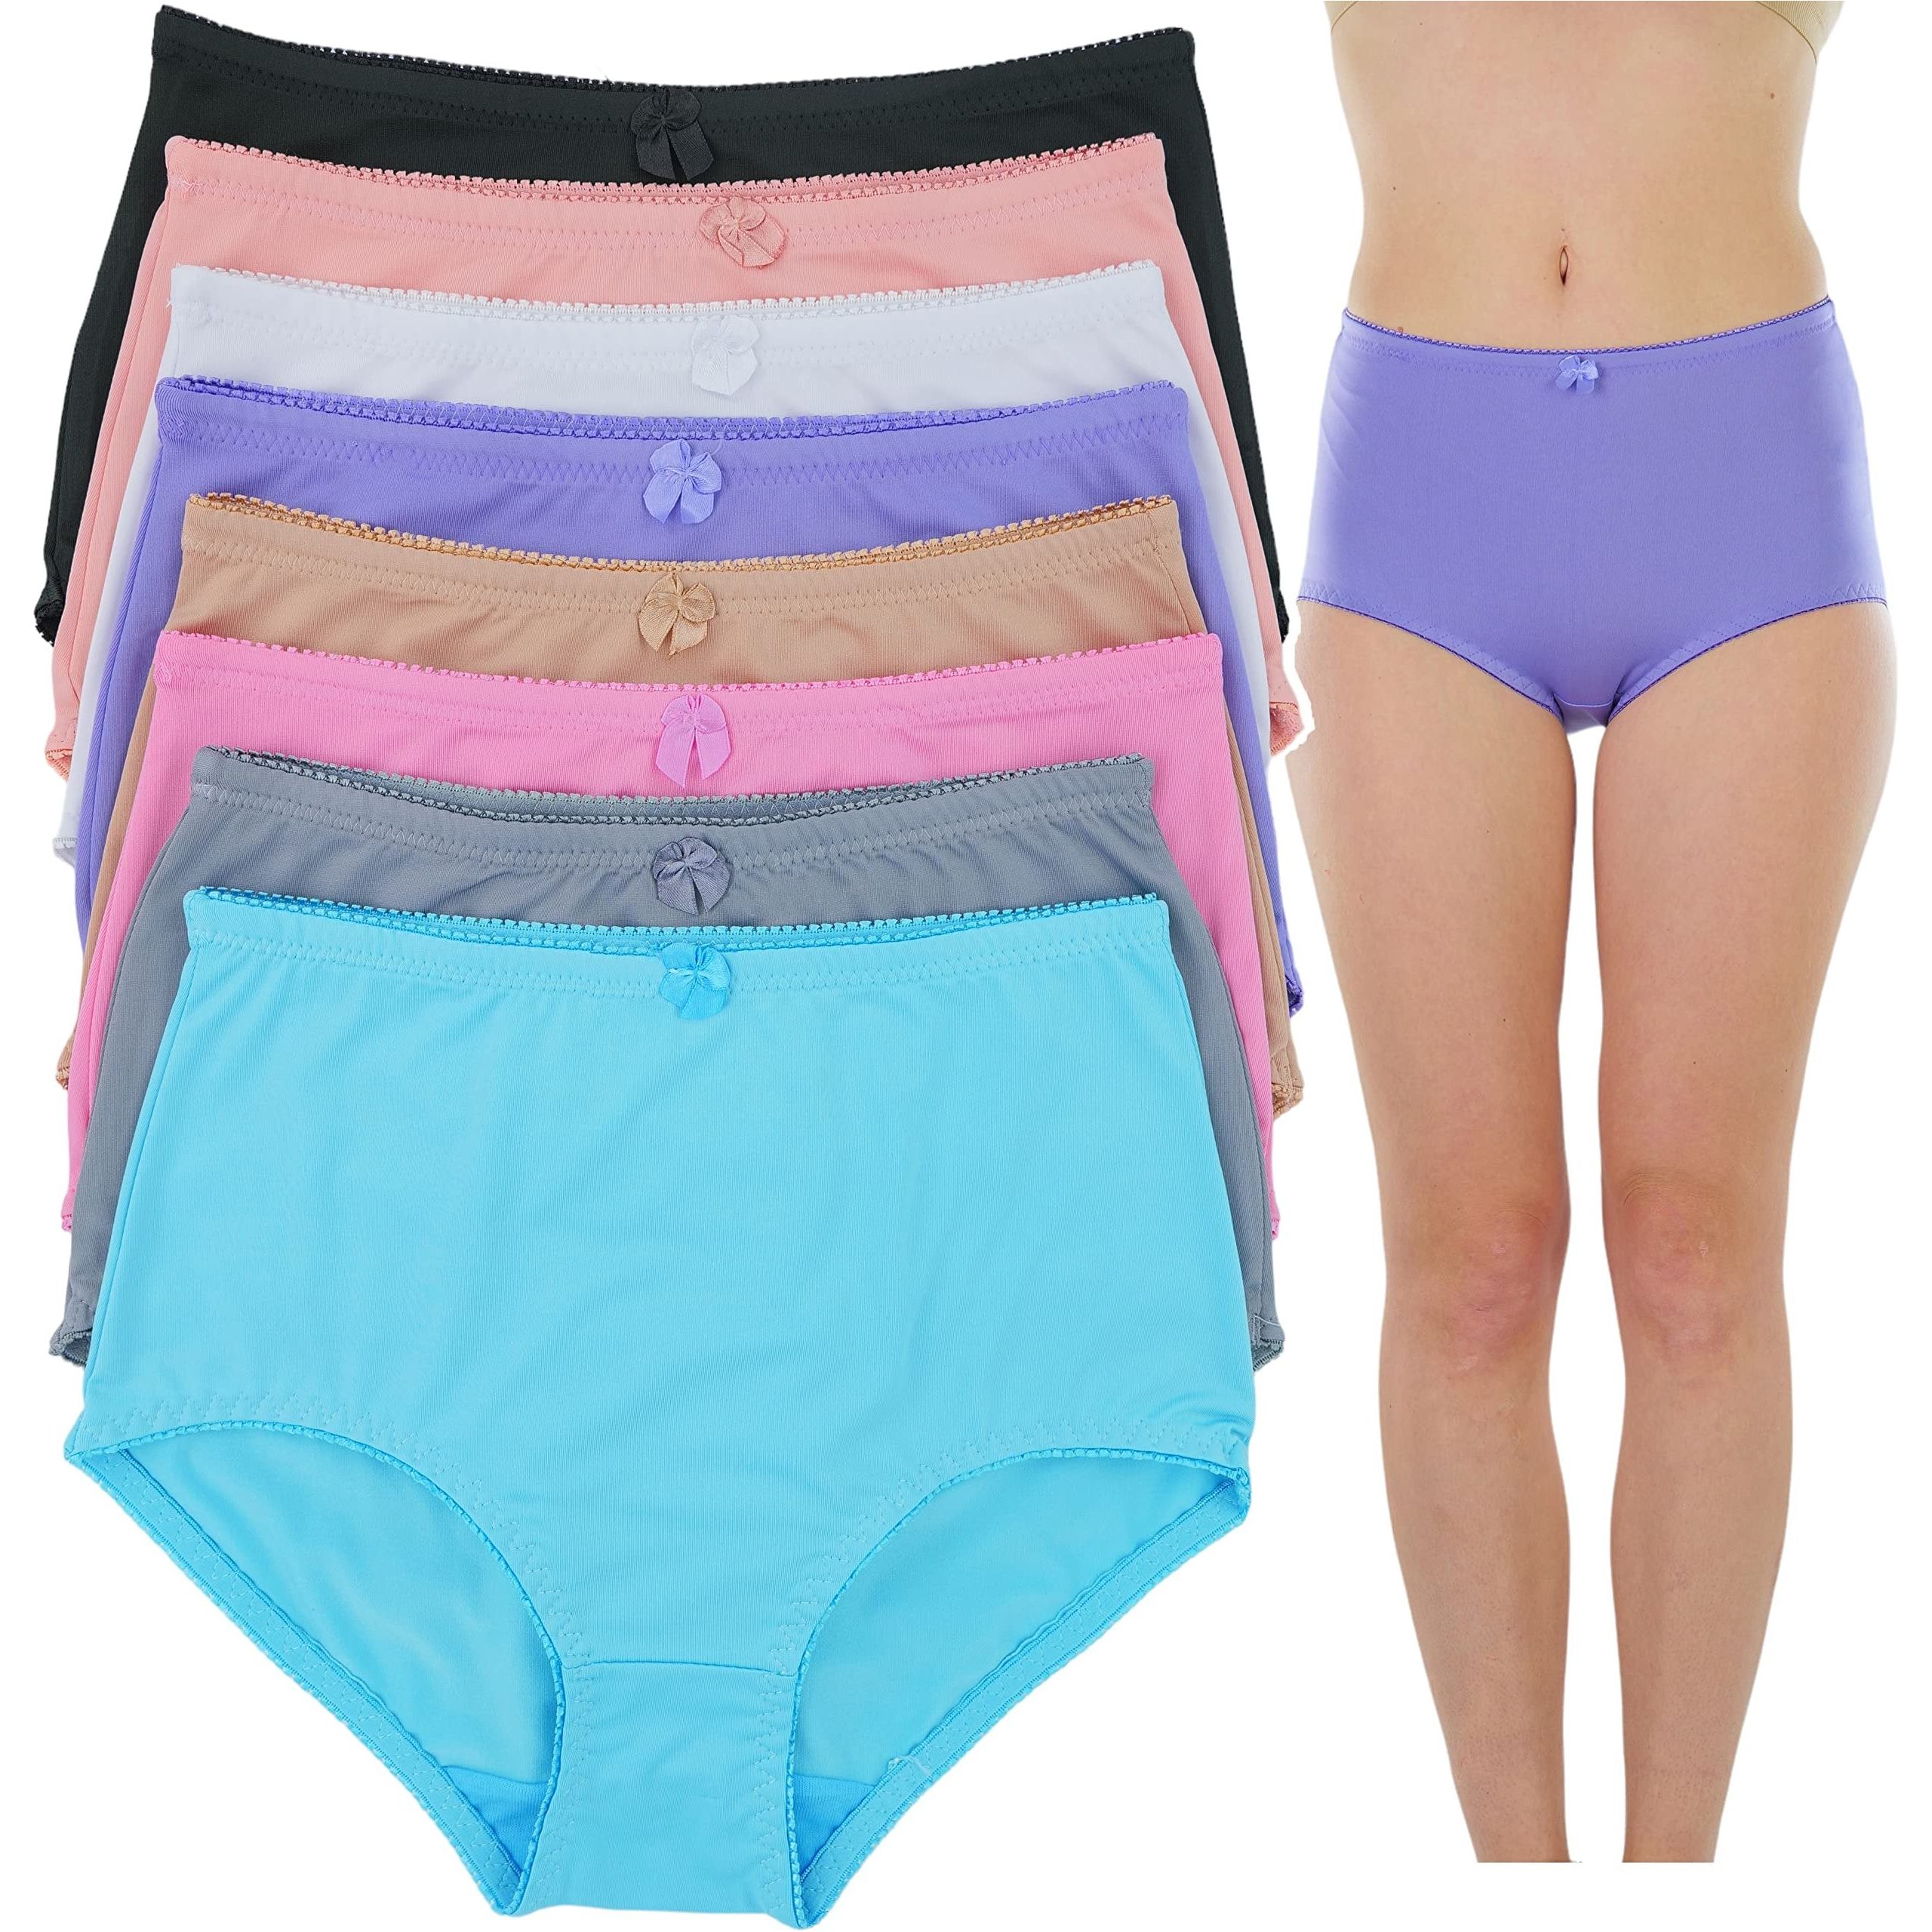 MK Hosiery Women's Plus Size High Waist Panties, Pack of 6, Multi-Coloured